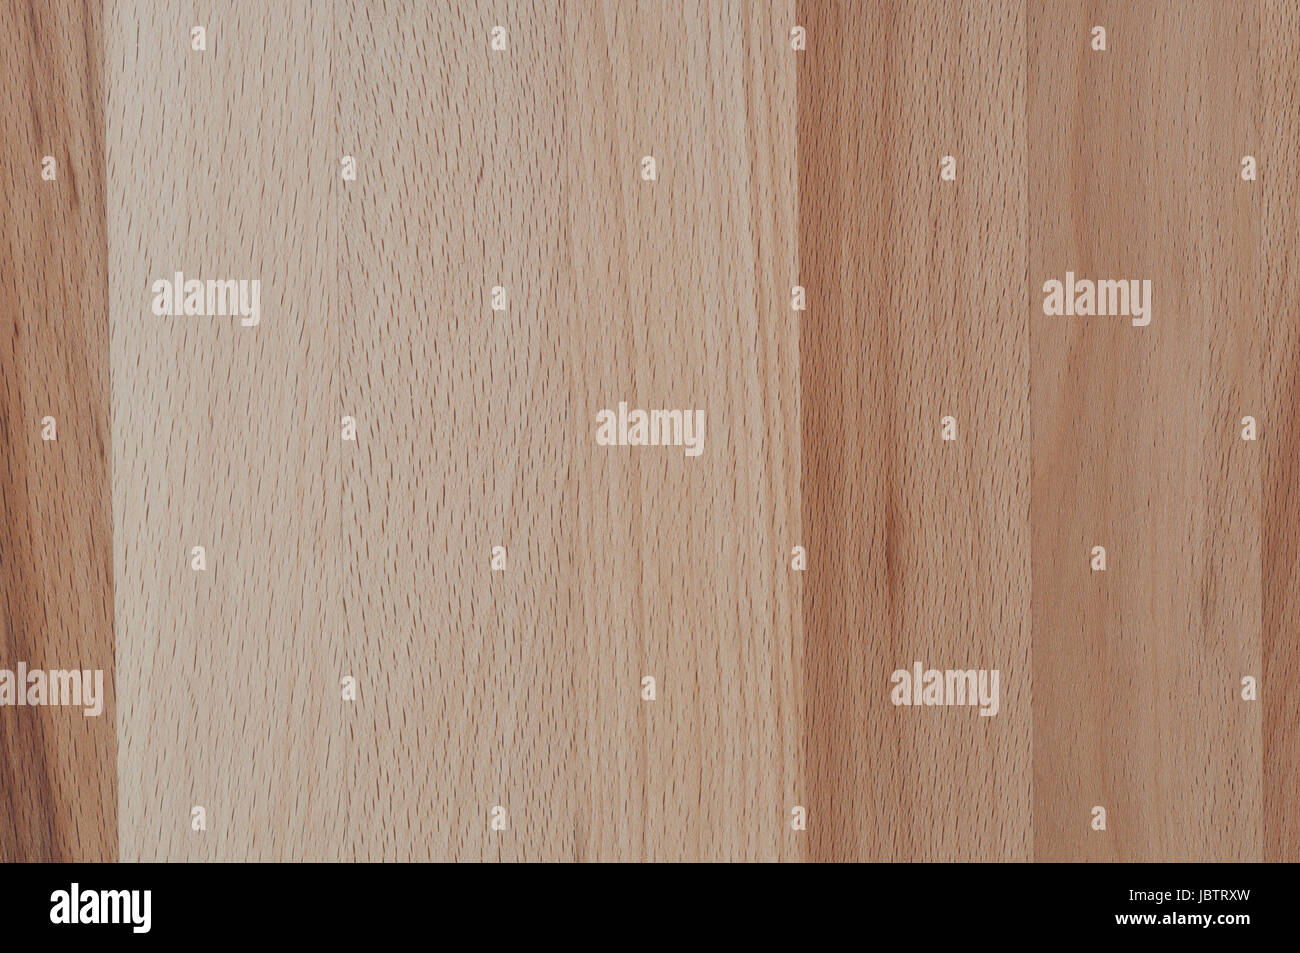 Hintergrund, Holzstruktur von einer Kirschbaum Holzplatte. Stock Photo